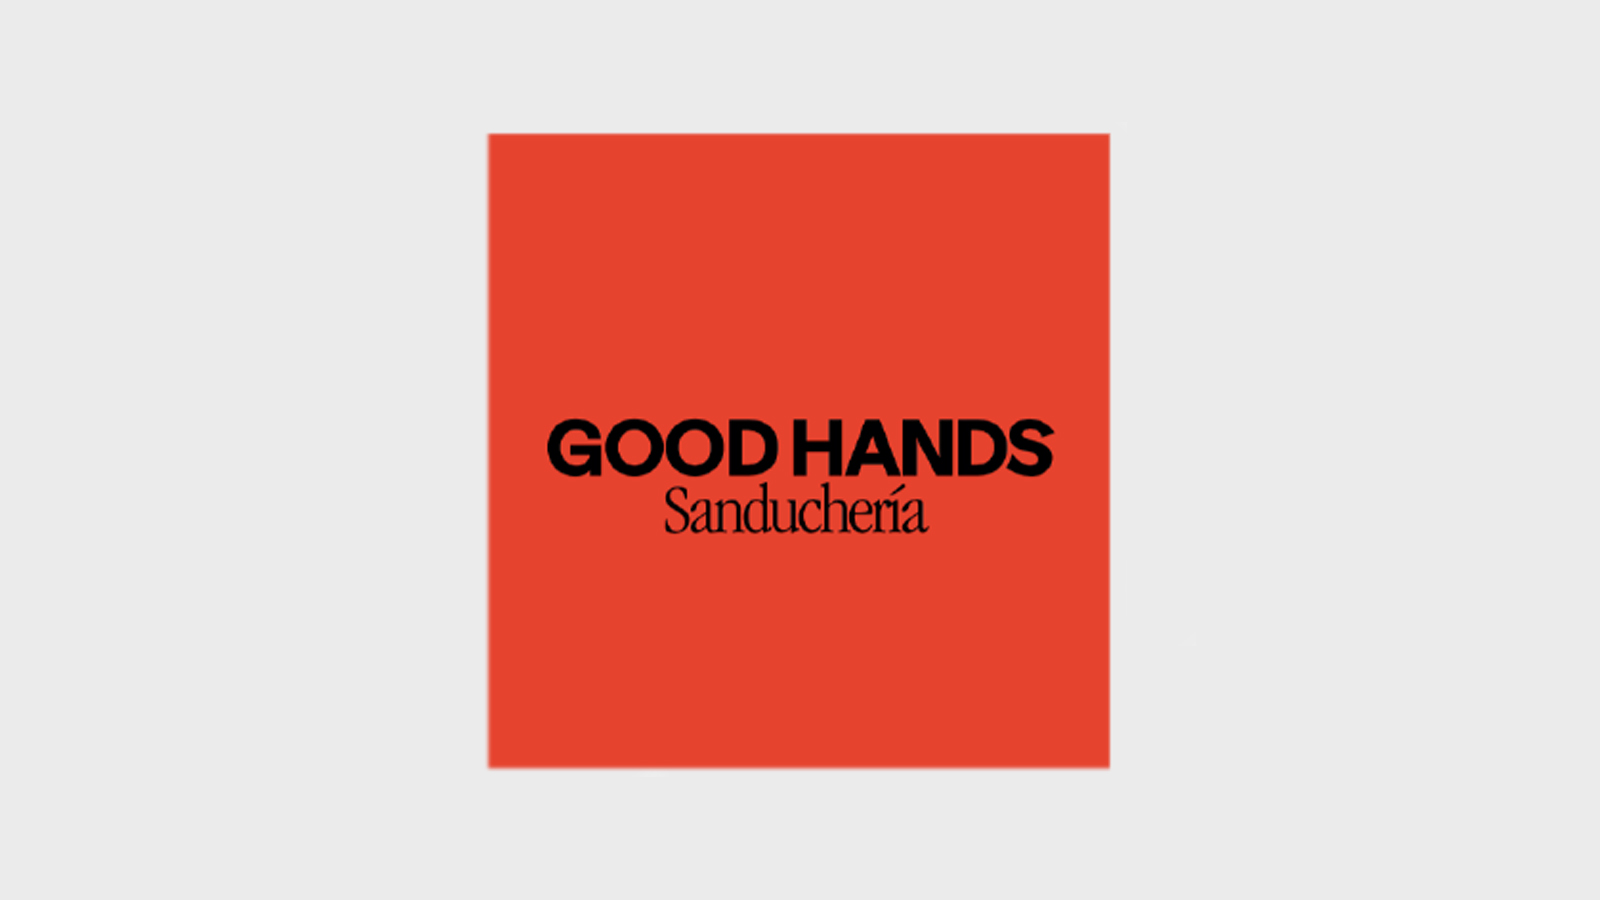 Good hands logo